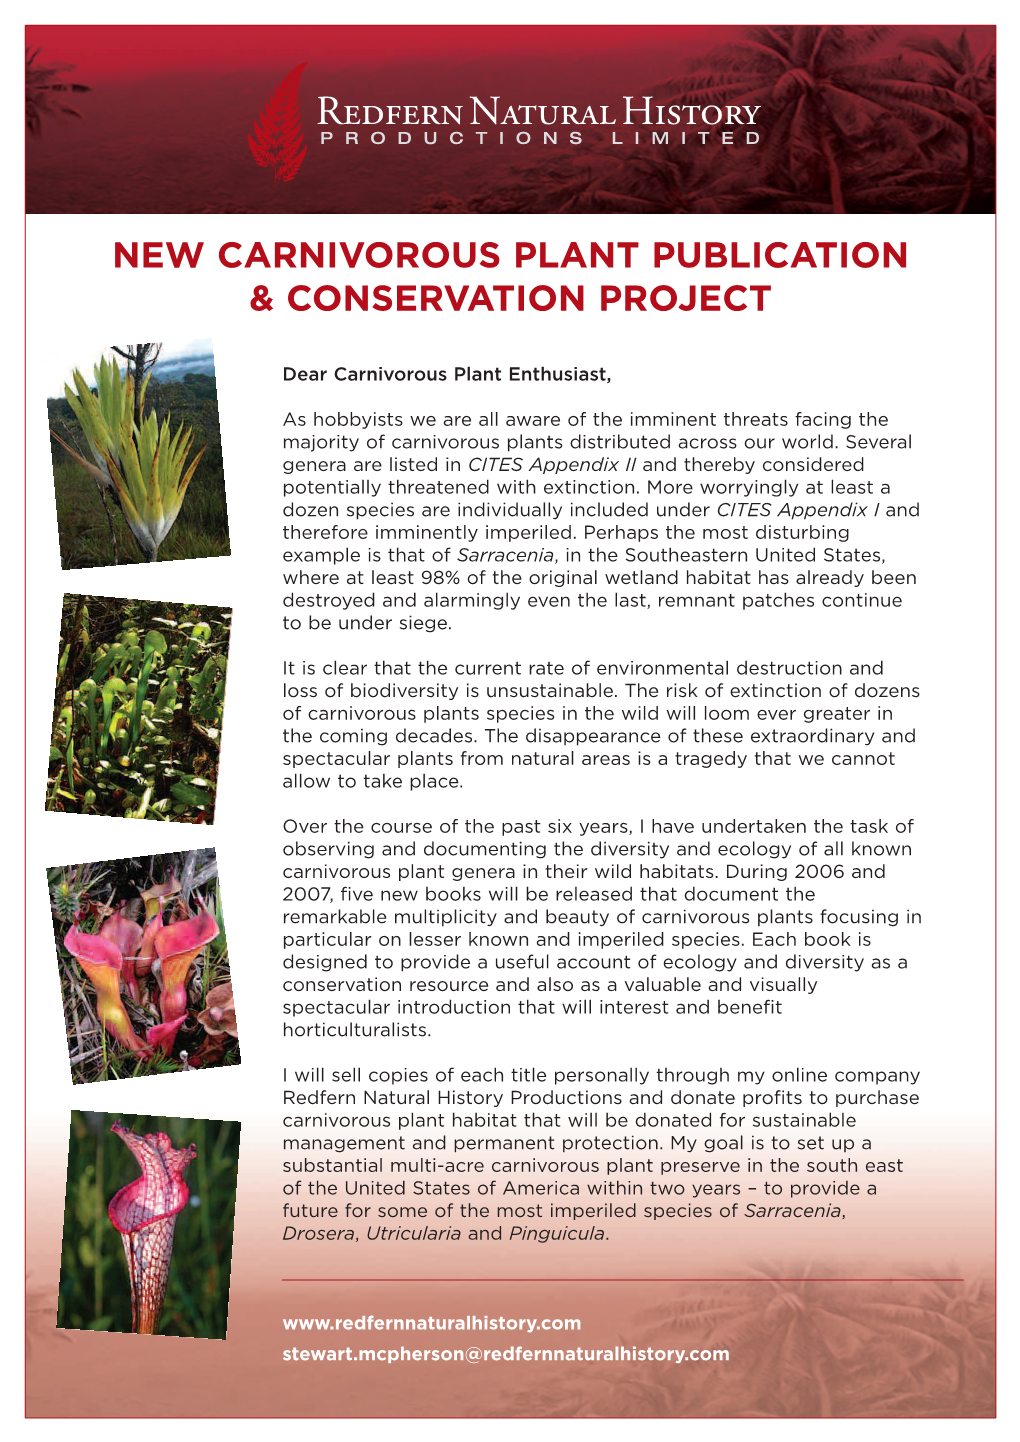 New Carnivorous Plant Publication & Conservation